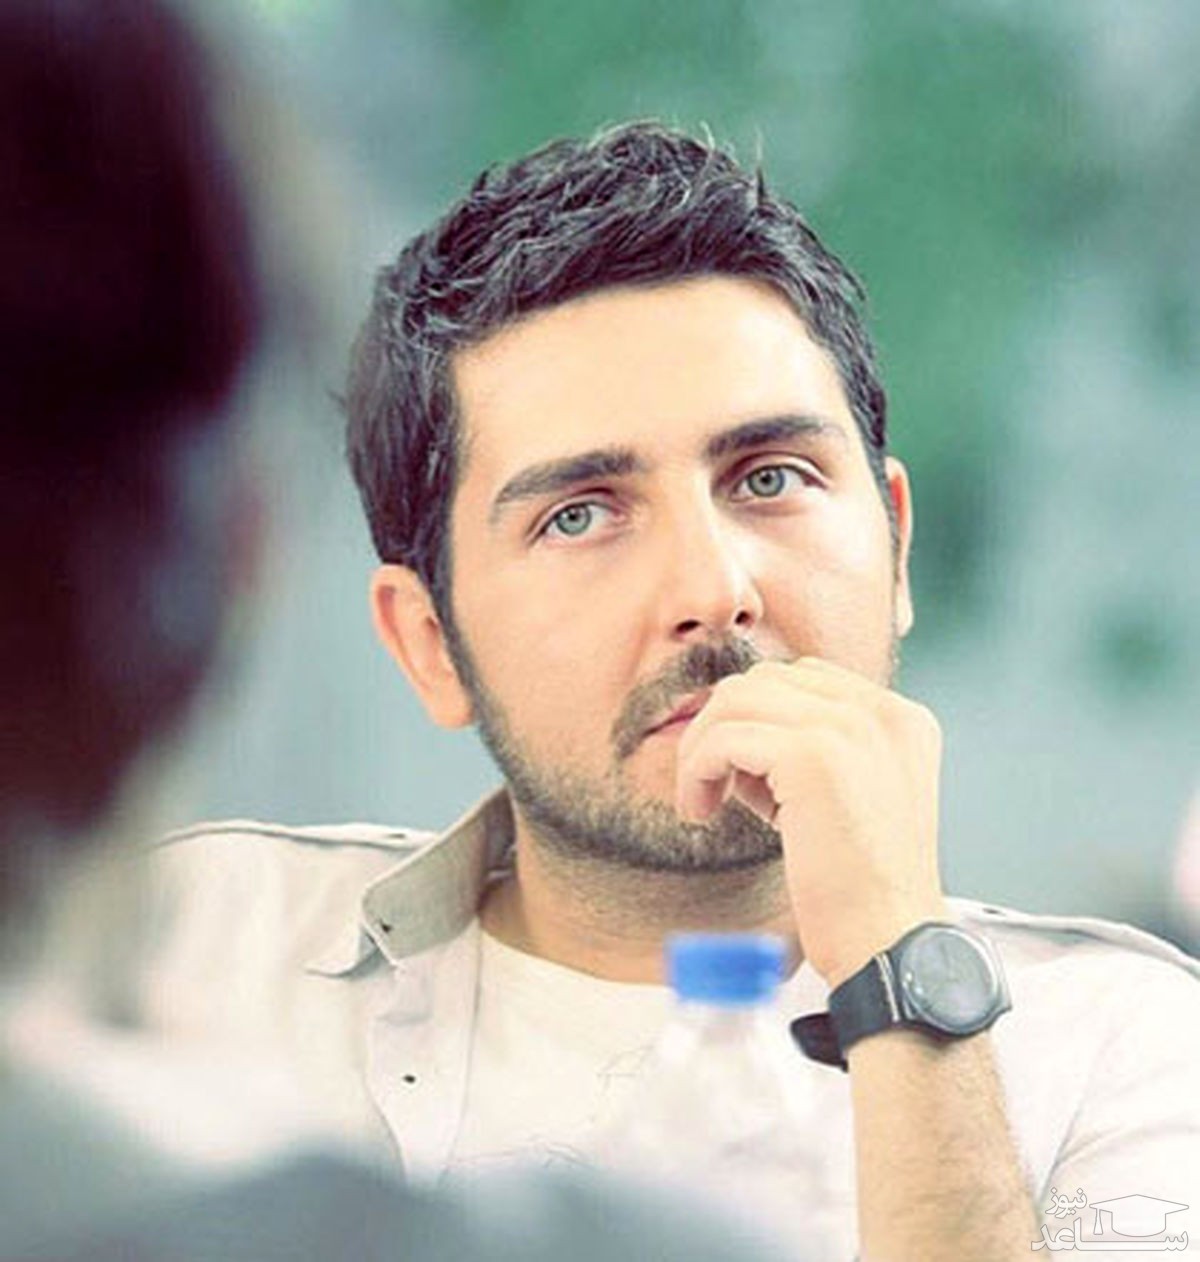 محمد رضا غفاری؛ بازیگر جوان چشم روشن سینما در حال استراحت